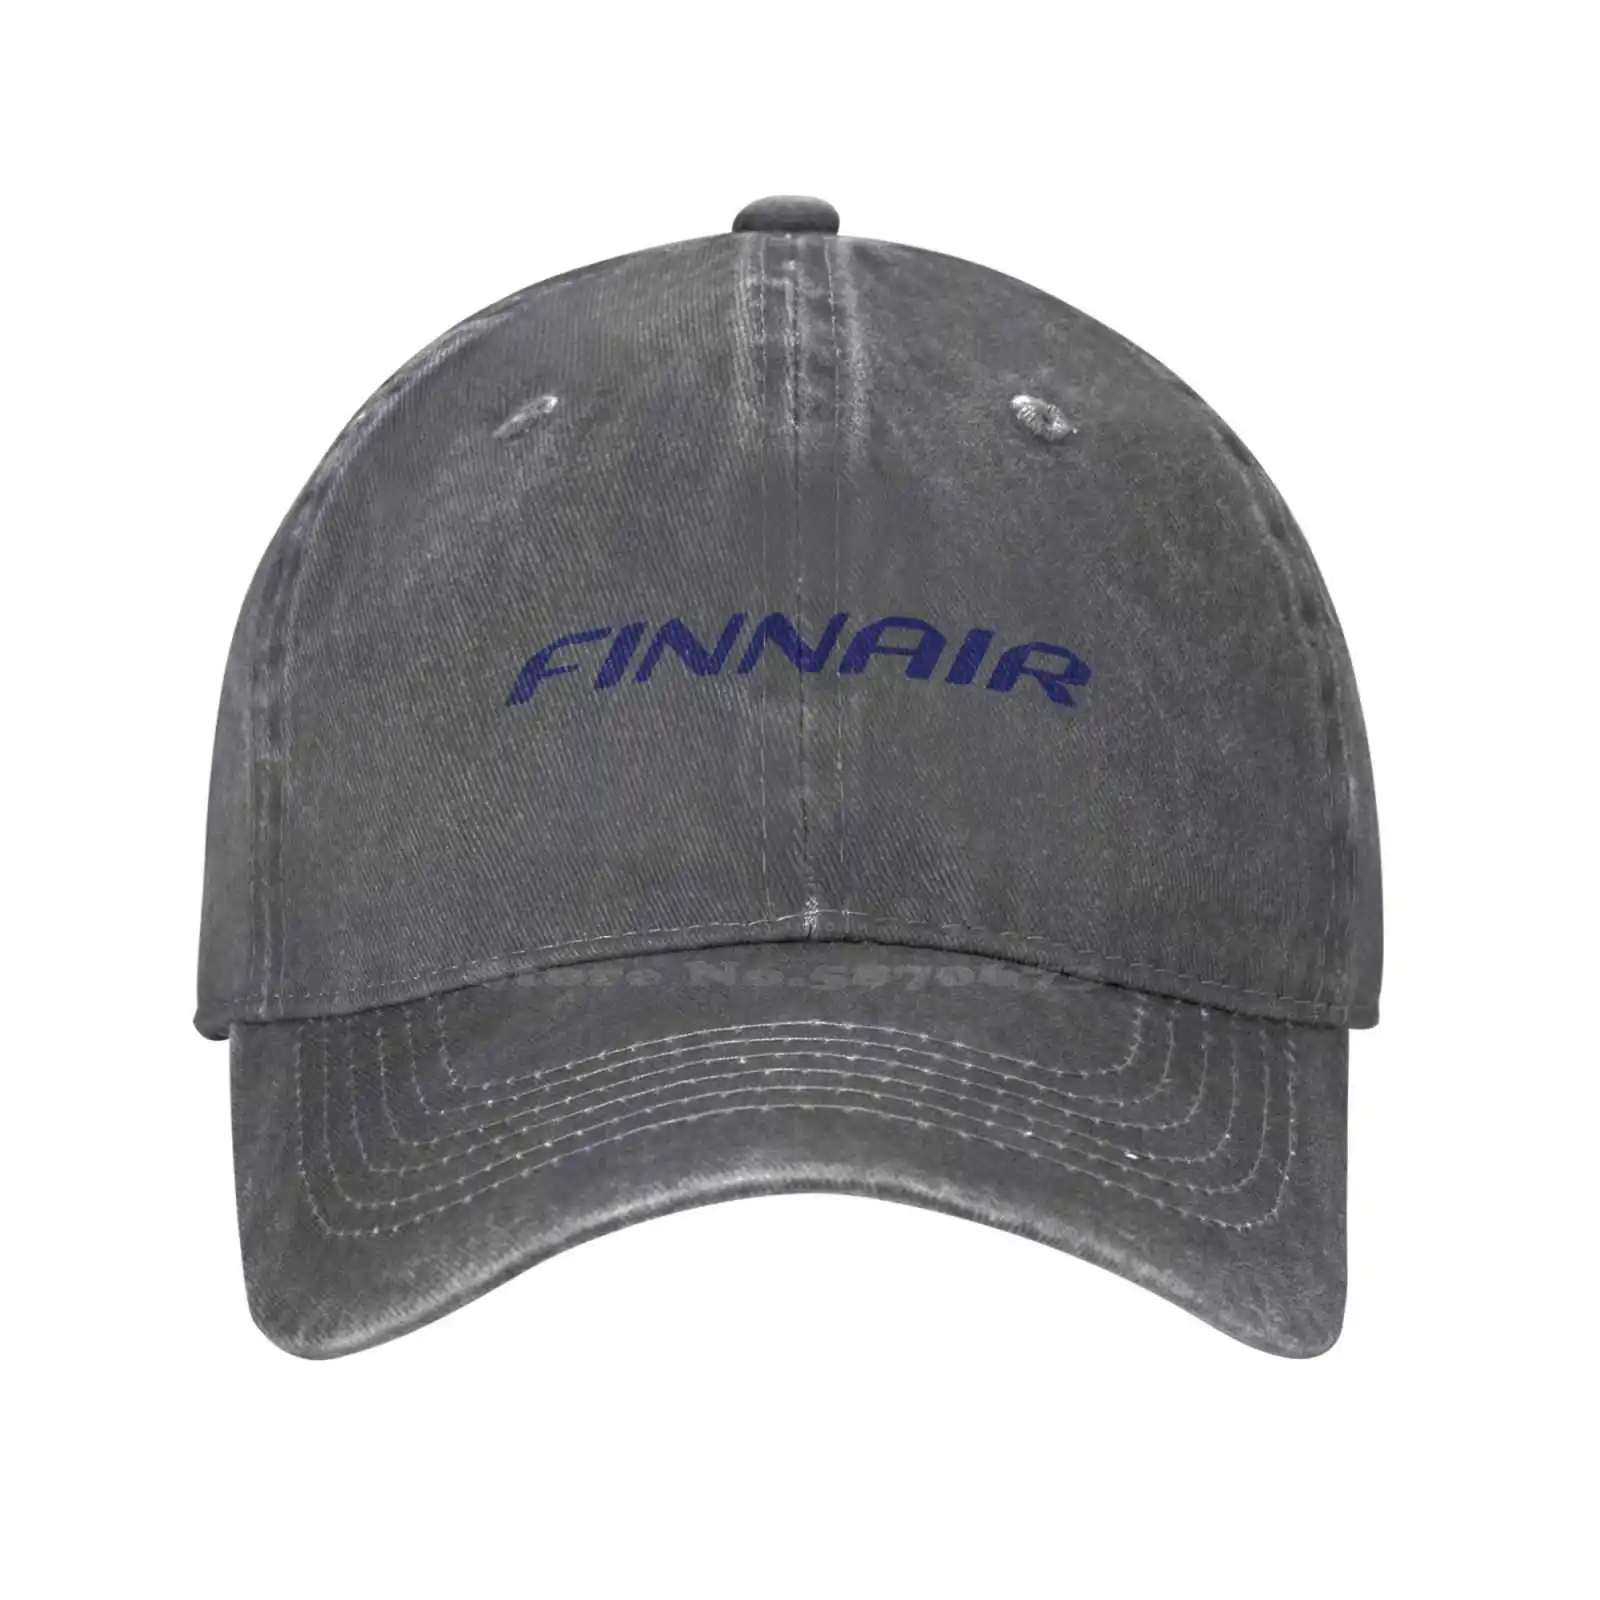 Шапка от висококачествен плат деним с графичен логото на Finnair, Вязаная капачка, бейзболна шапка